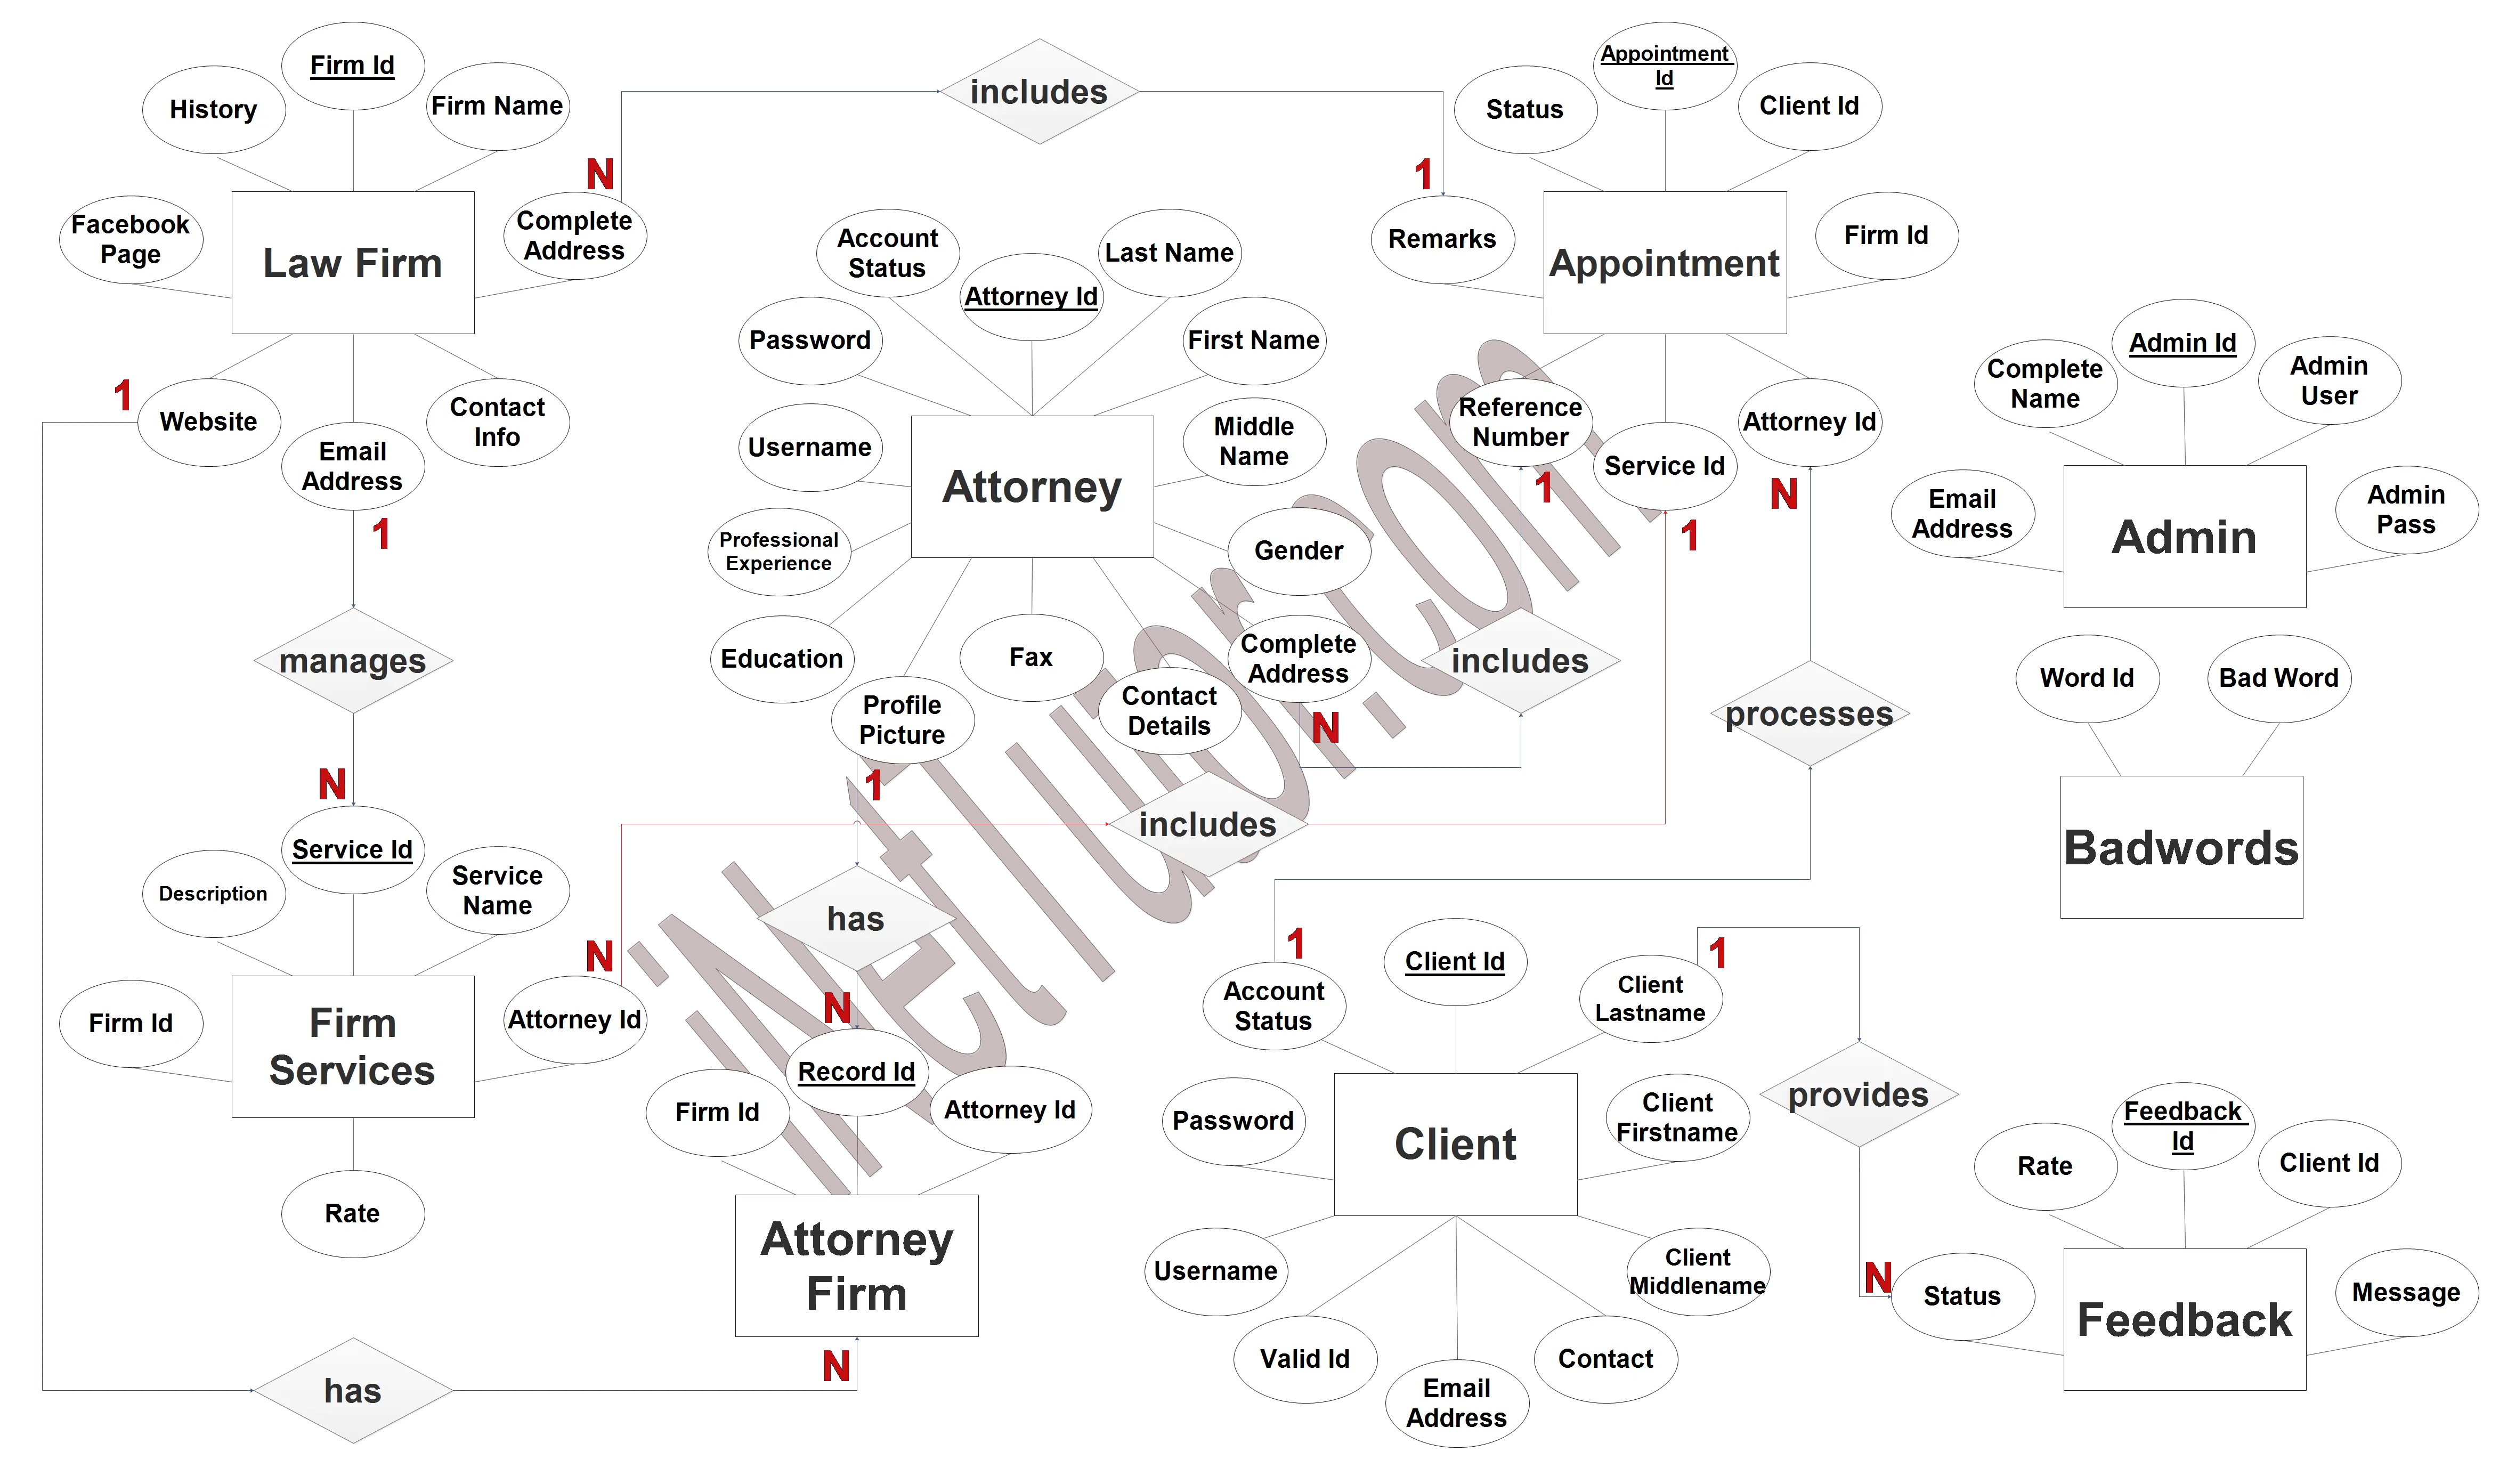 Law Office System ER Diagram - Step 3 Complete ERD